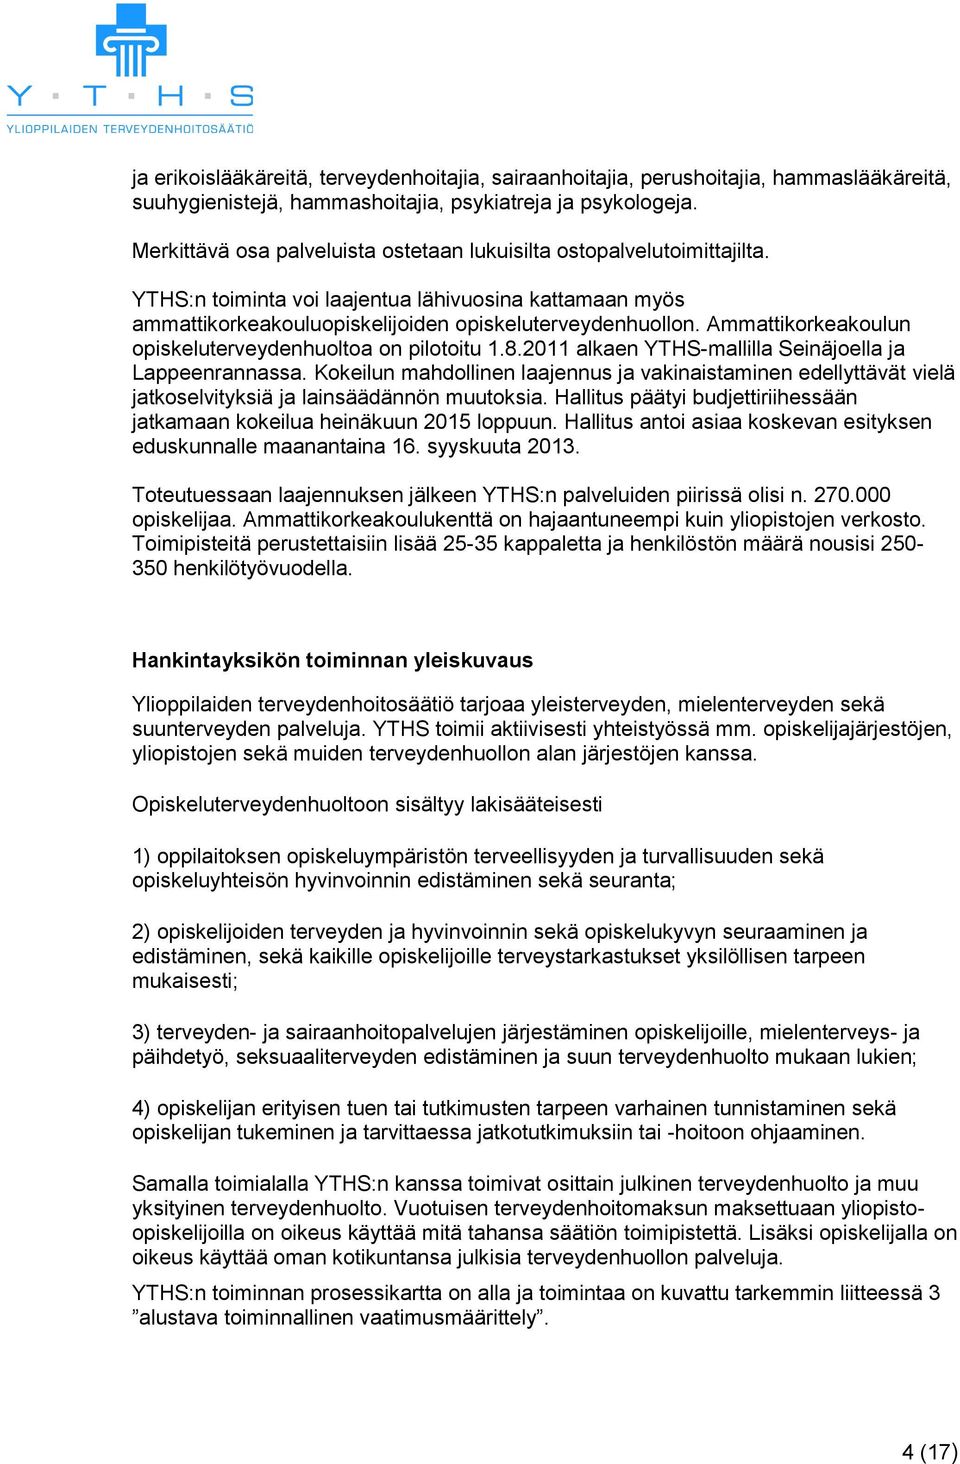 Ammattikorkeakoulun opiskeluterveydenhuoltoa on pilotoitu 1.8.2011 alkaen YTHS-mallilla Seinäjoella ja Lappeenrannassa.